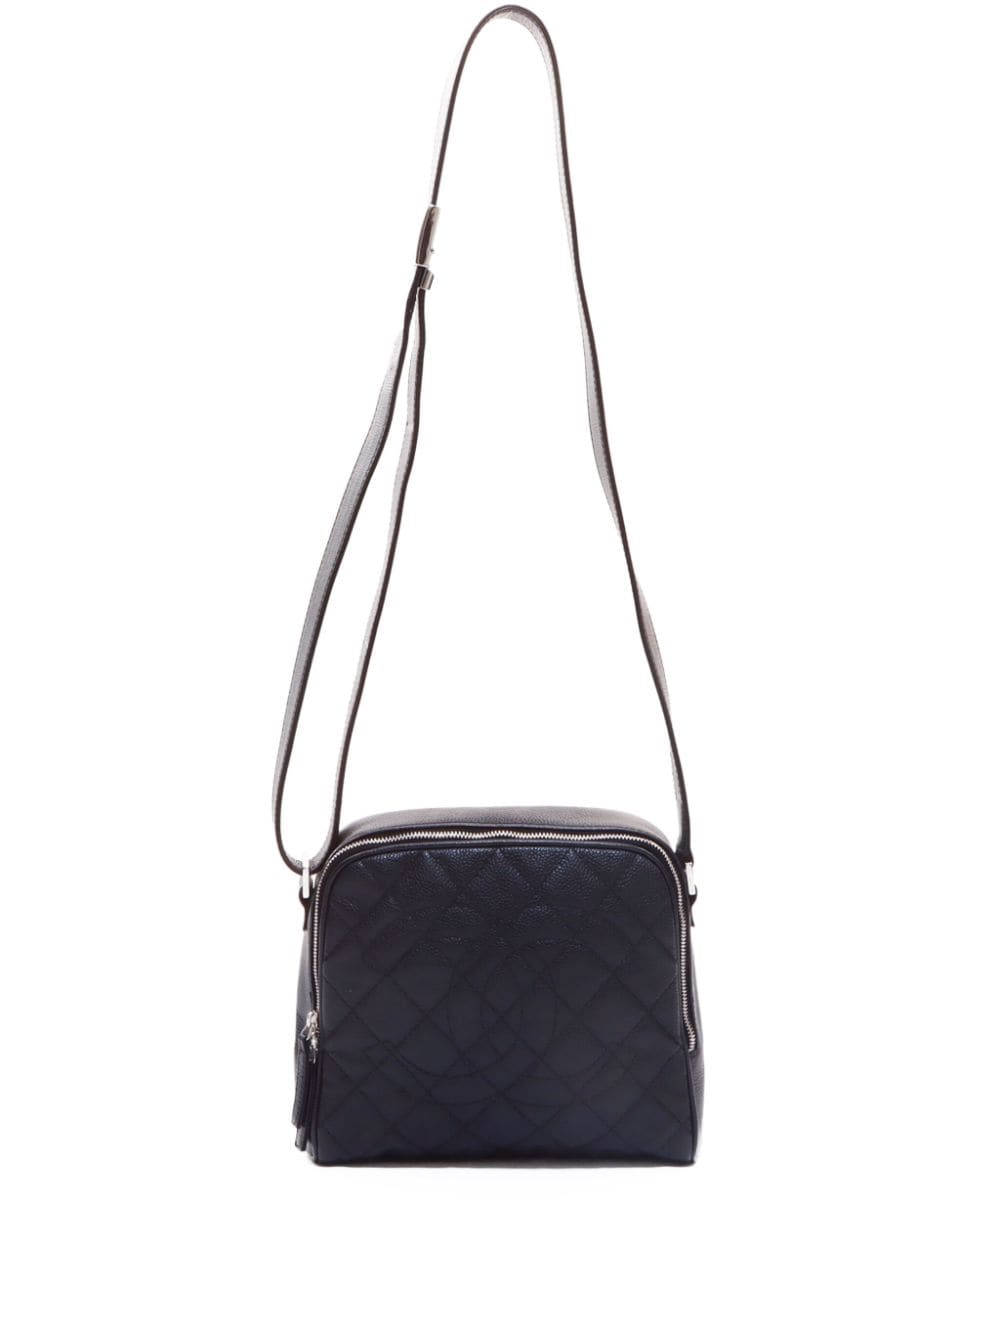 Pre-owned Chanel 2008-2009 Matelassé Shoulder Bag In Black